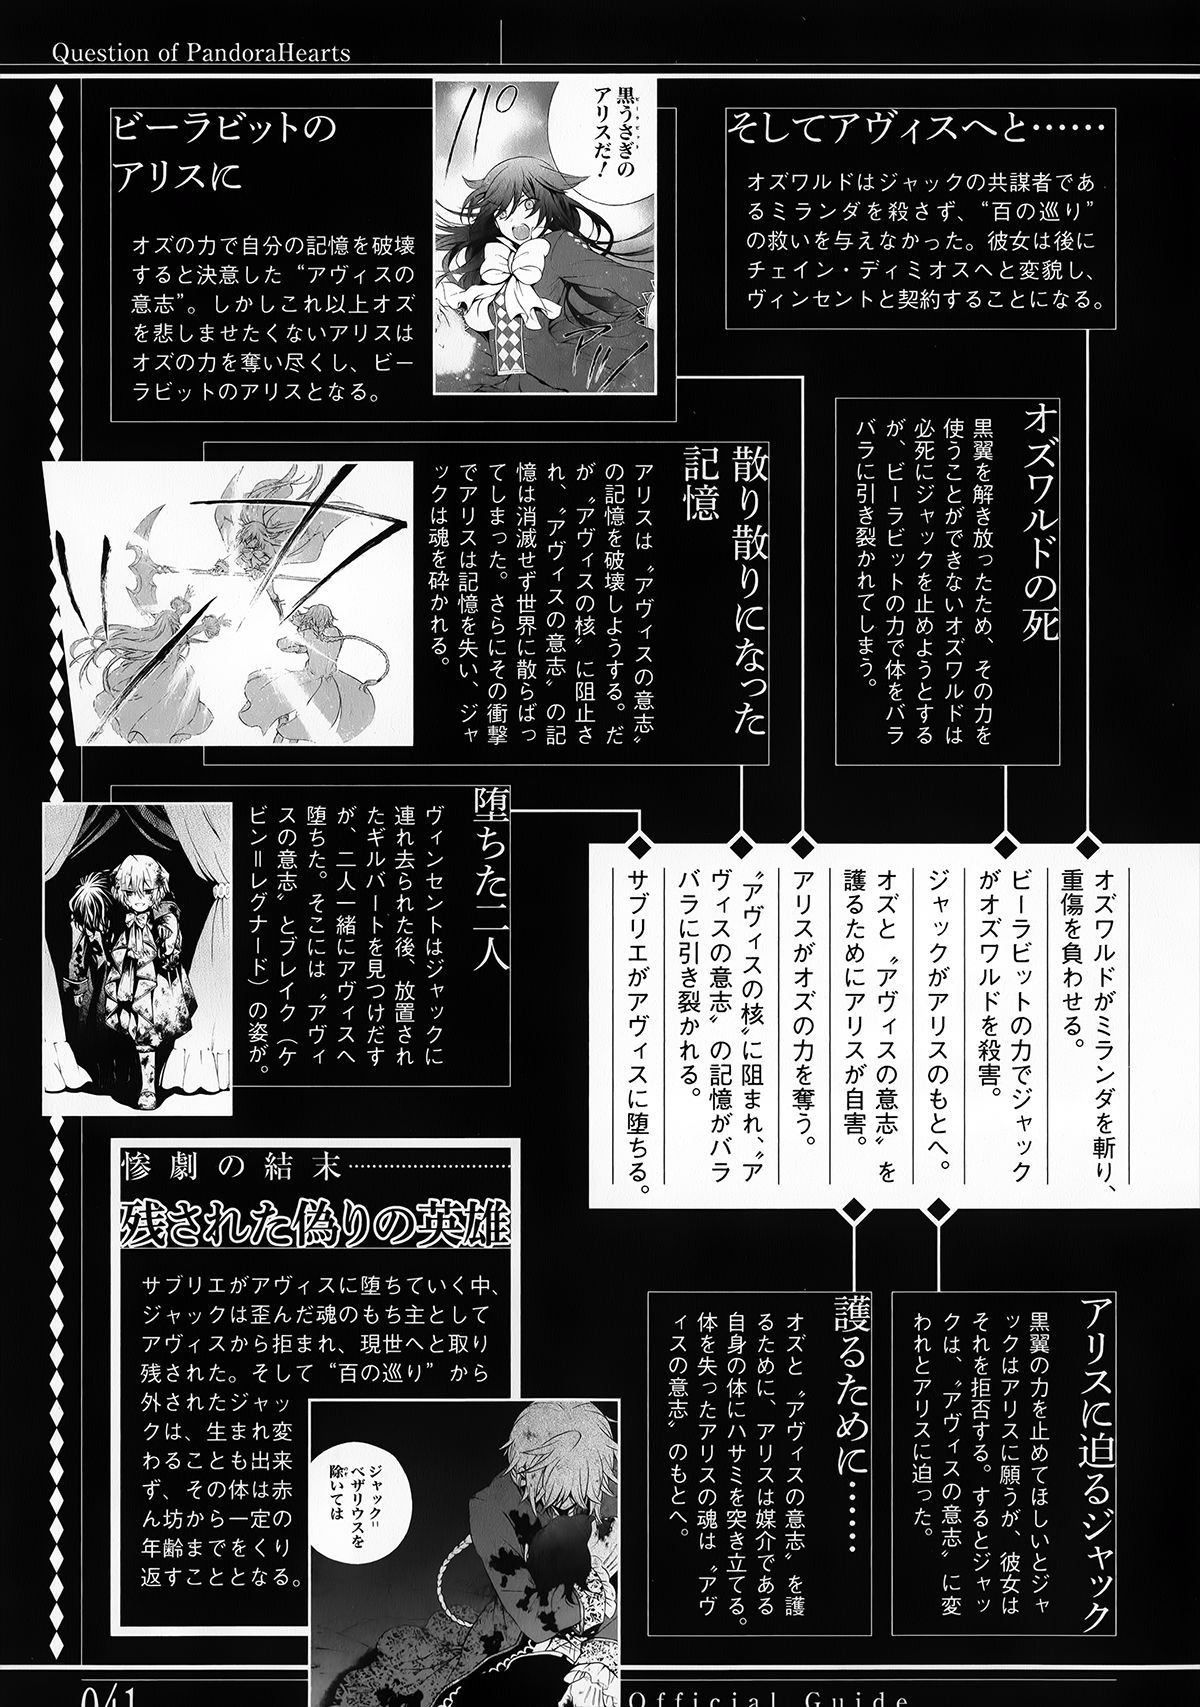 Pandora Hearts Guidebook 24+1: Last Dance パンドラハーツ オフィシャルガイド 24 + 1 ~Last Dance! 44